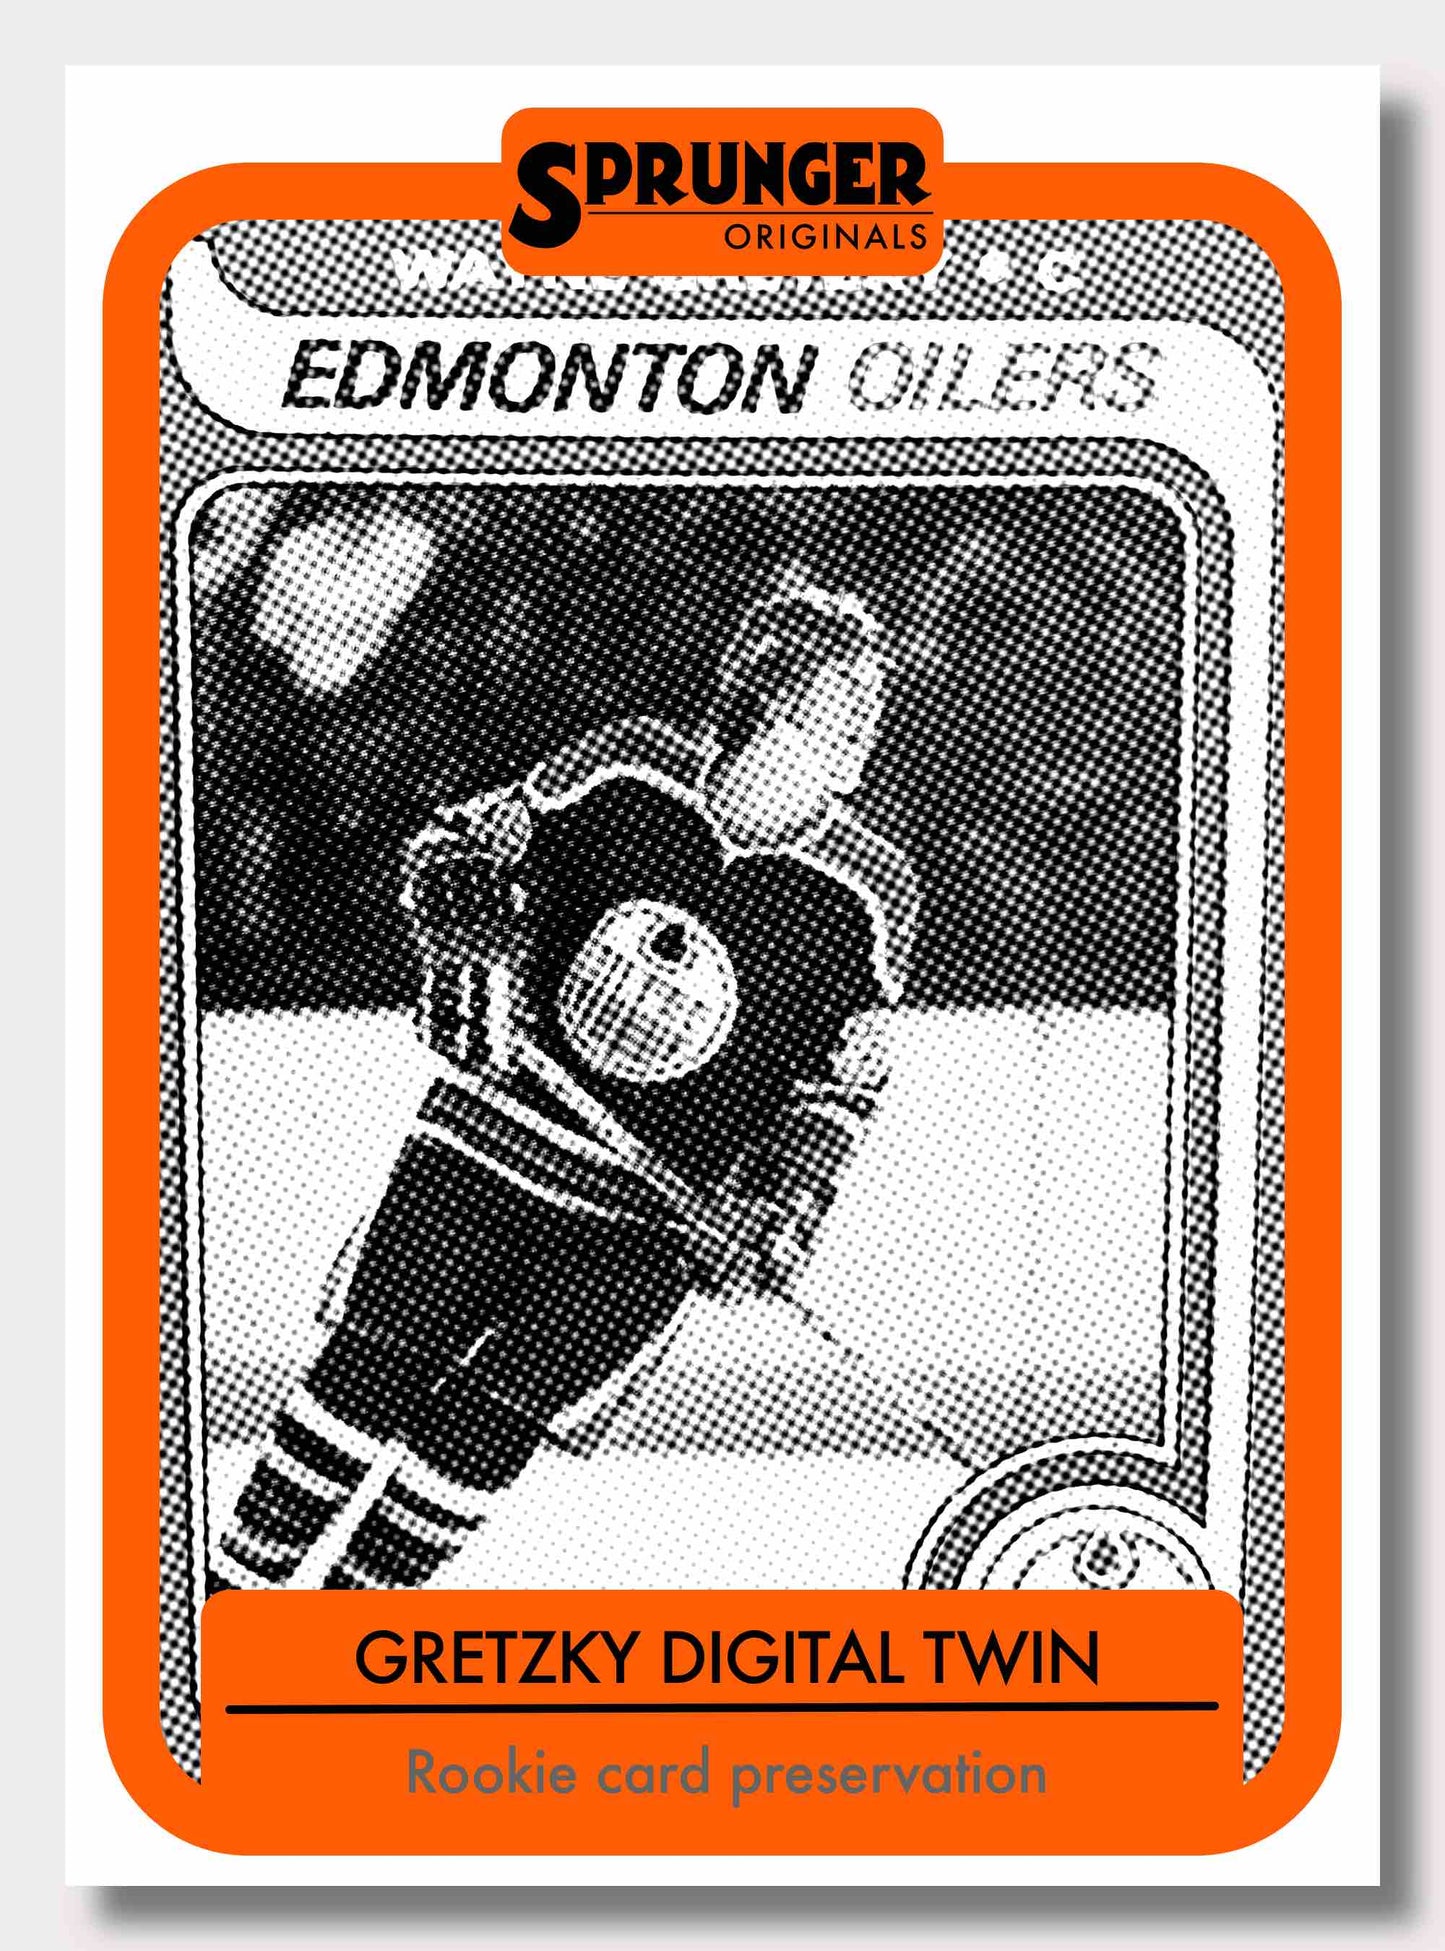 Gretzky rookie card - digital twin